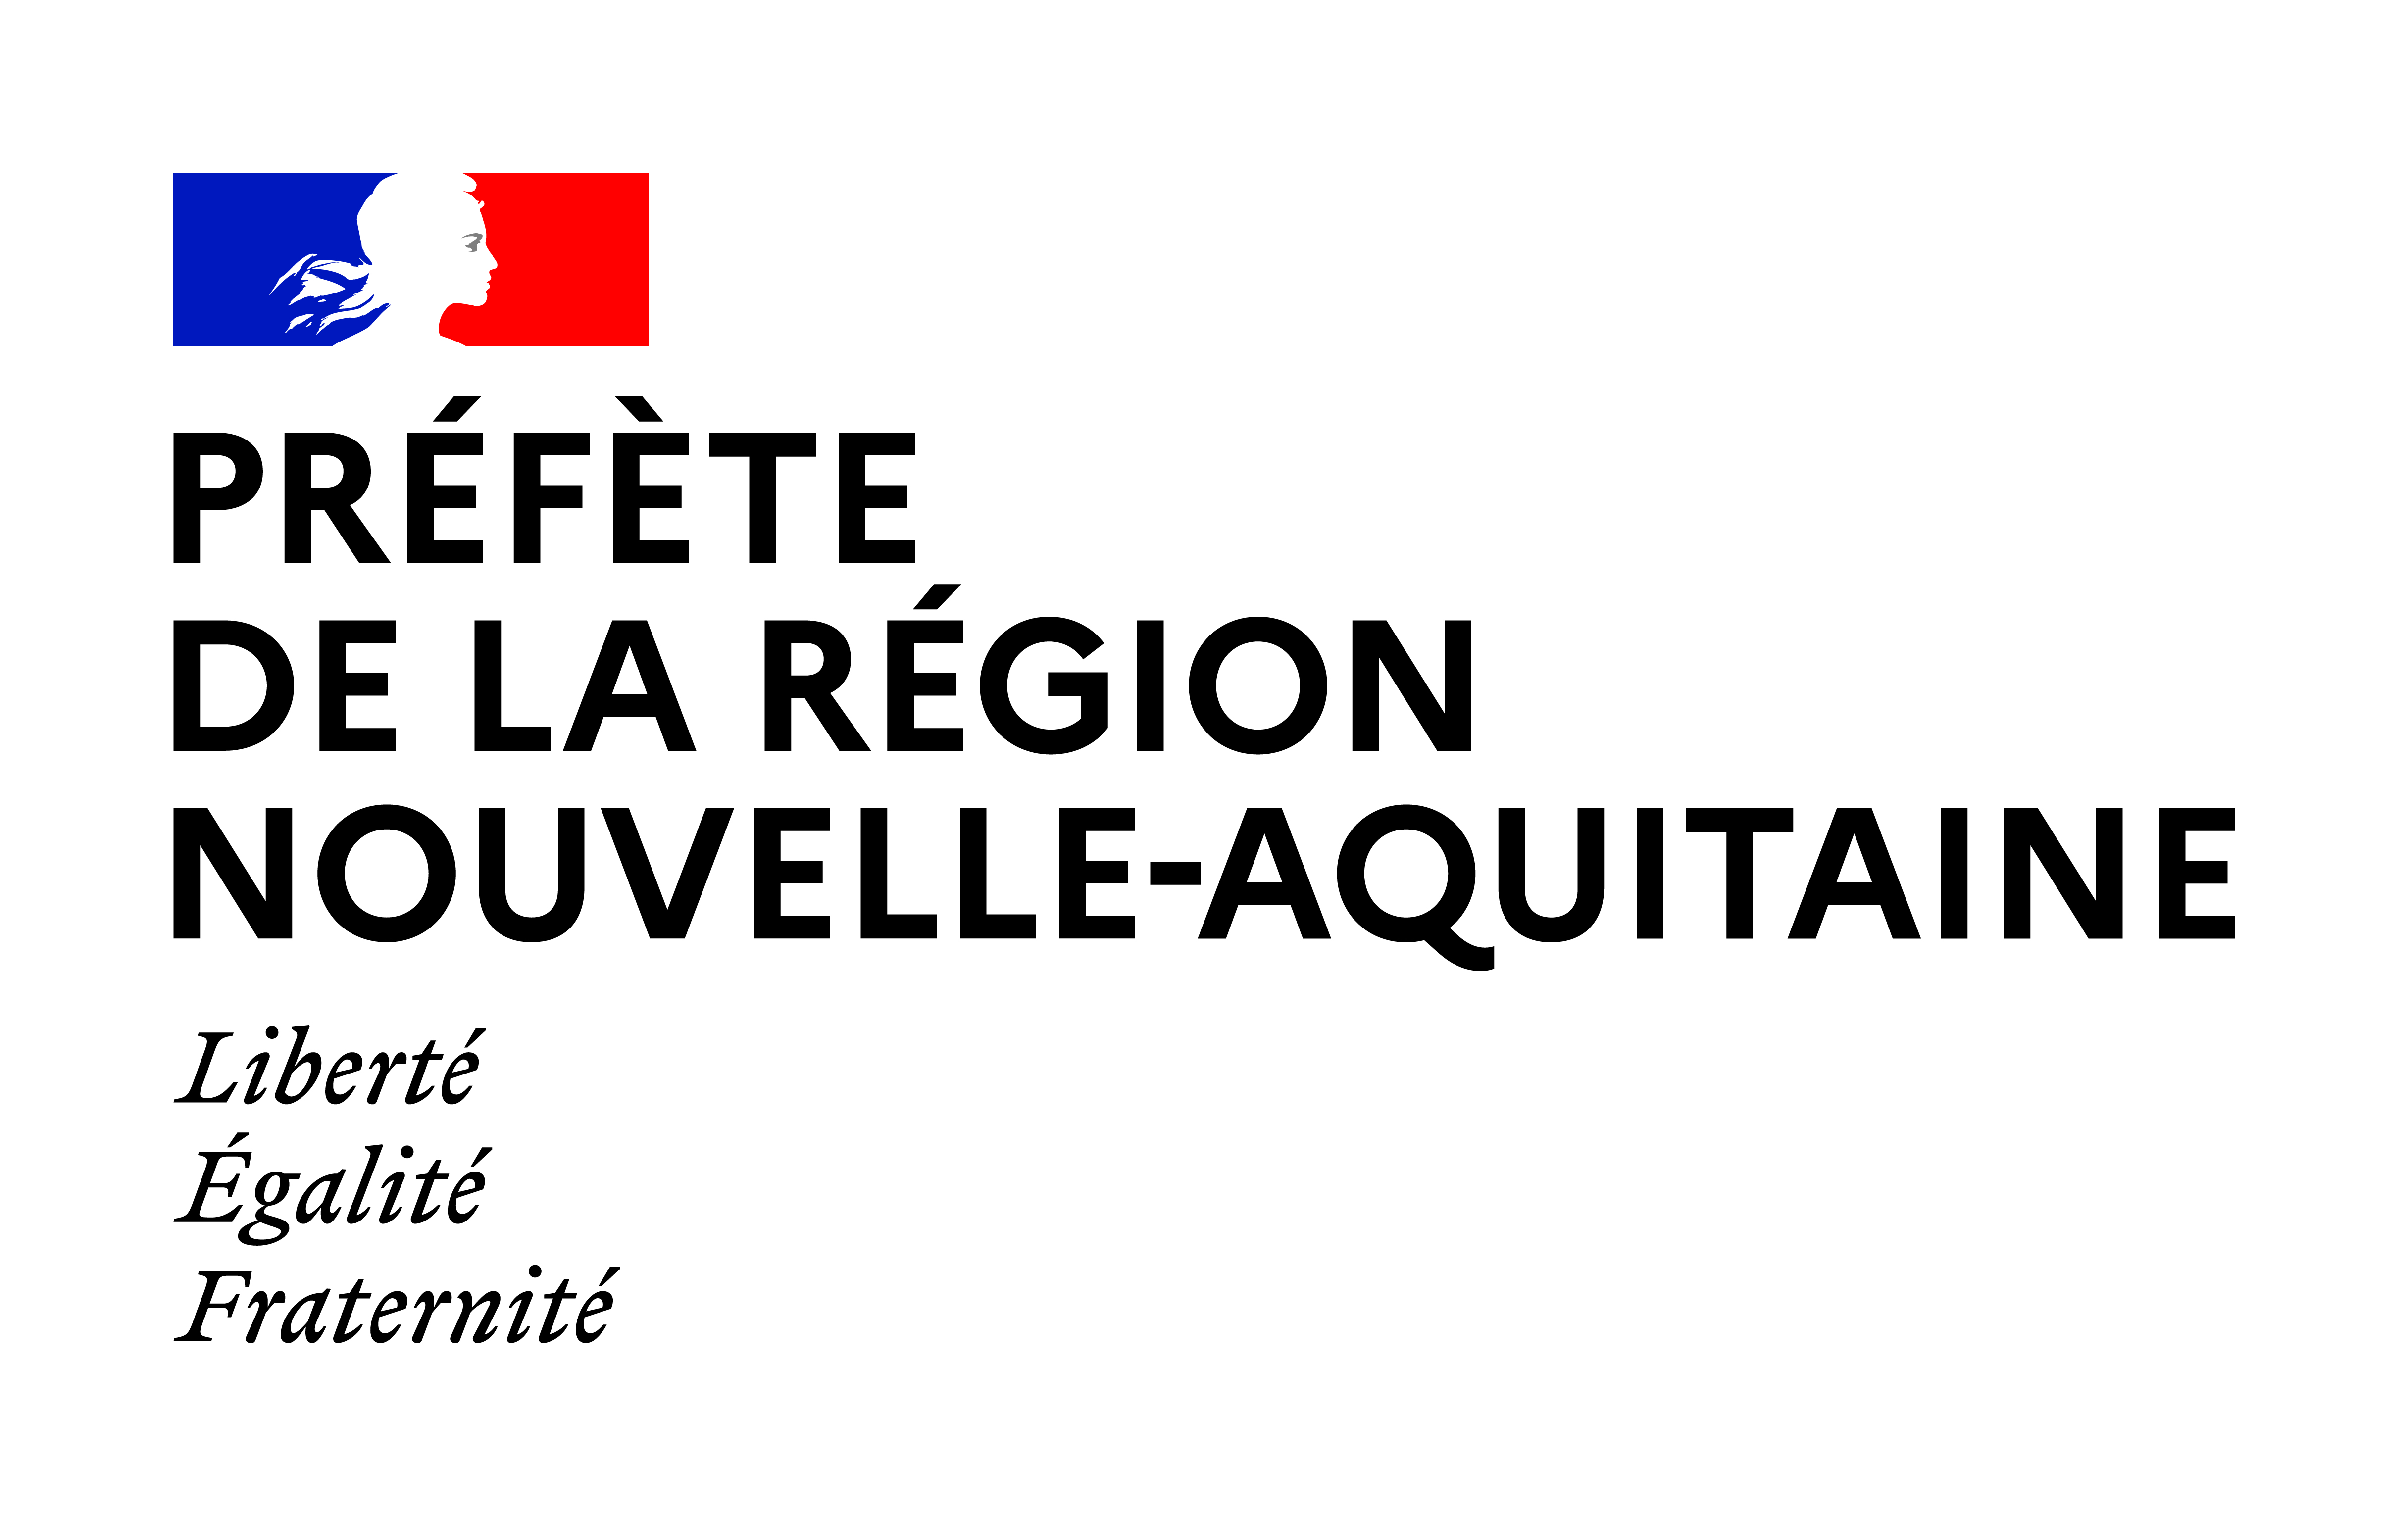 DRAC PREFETE region Nouvelle Aquitaine Couleurs min